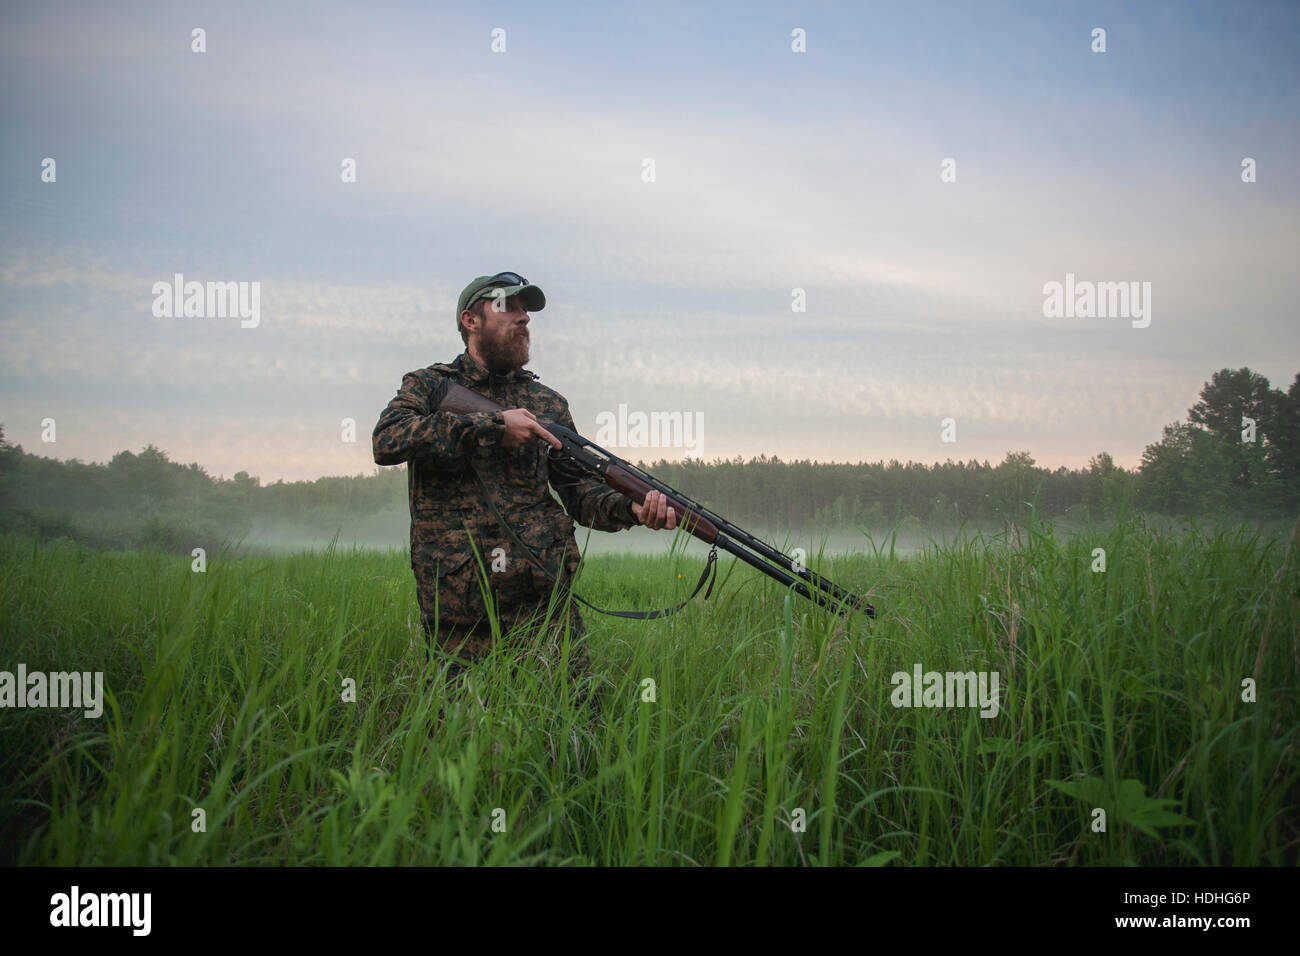 Jäger Holding Gewehr auf auffangene gegen Himmel stehend Stockfoto